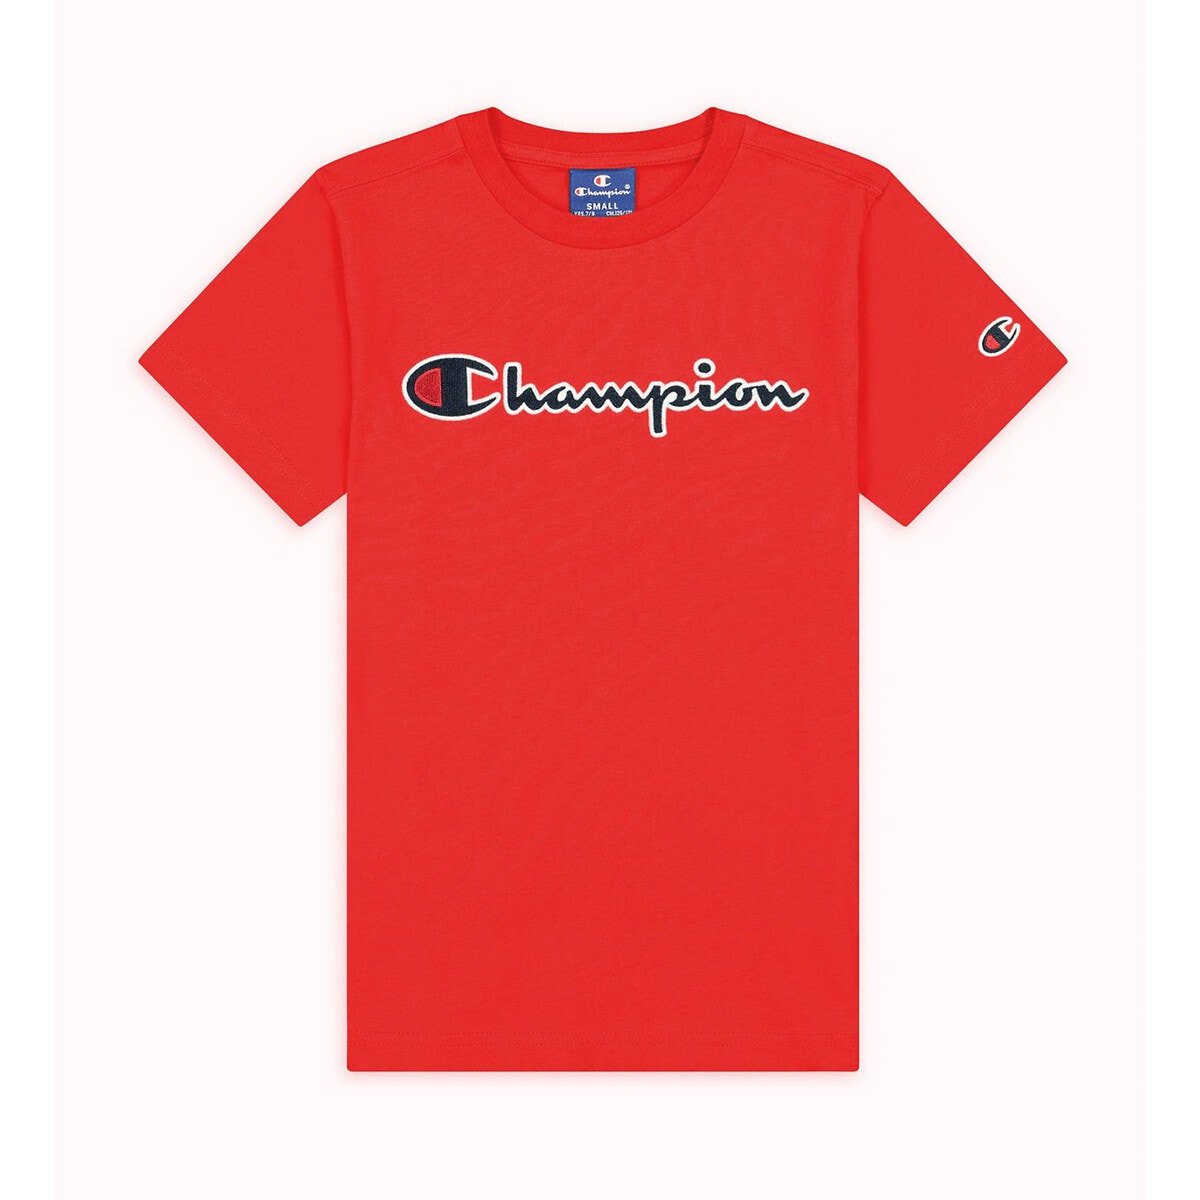 ΠΑΙΔΙ | Μπλούζες & Πουκάμισα | T-shirts Κοντομάνικο T-shirt, 9-16 ετών